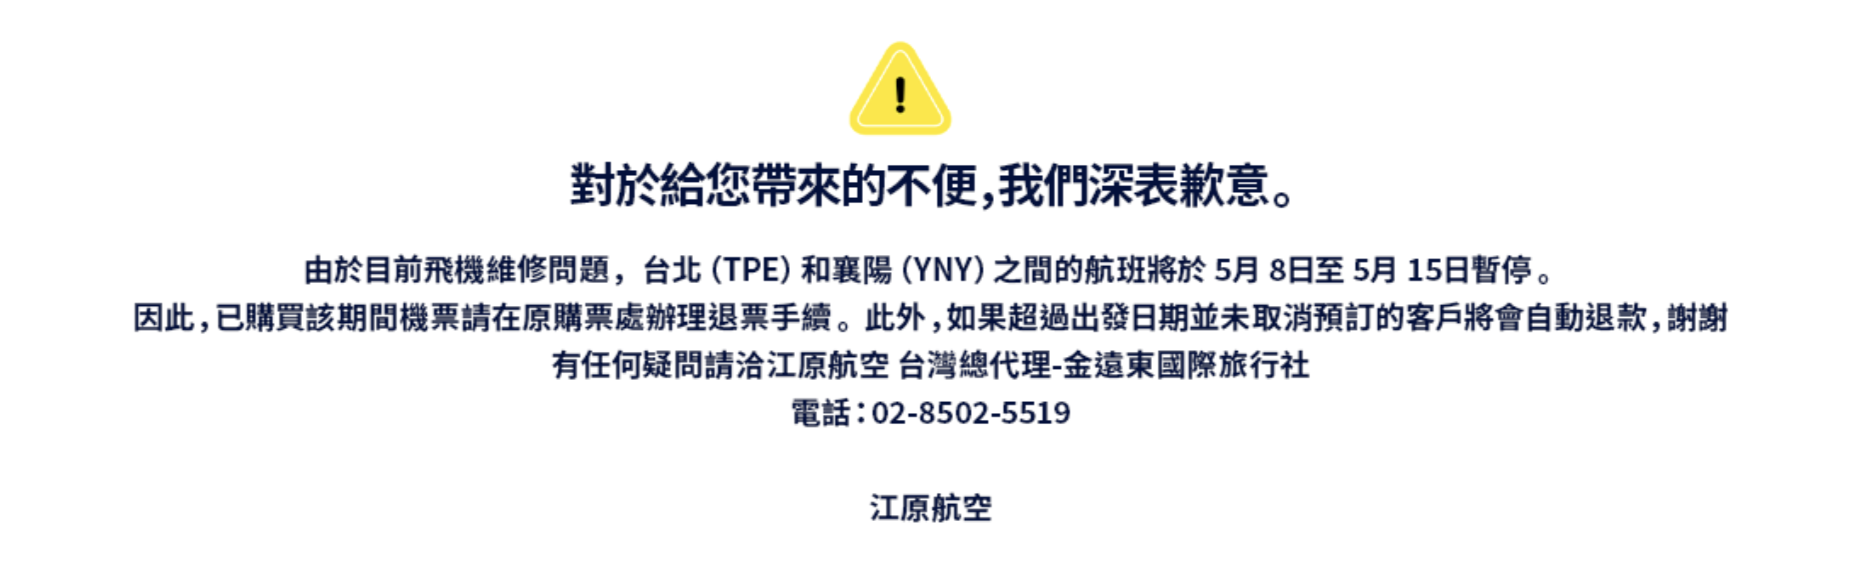 江原航空因飛機維修問題，在5/8 – 5/15間暫停台北（TPE）往襄陽（YNY）的航班